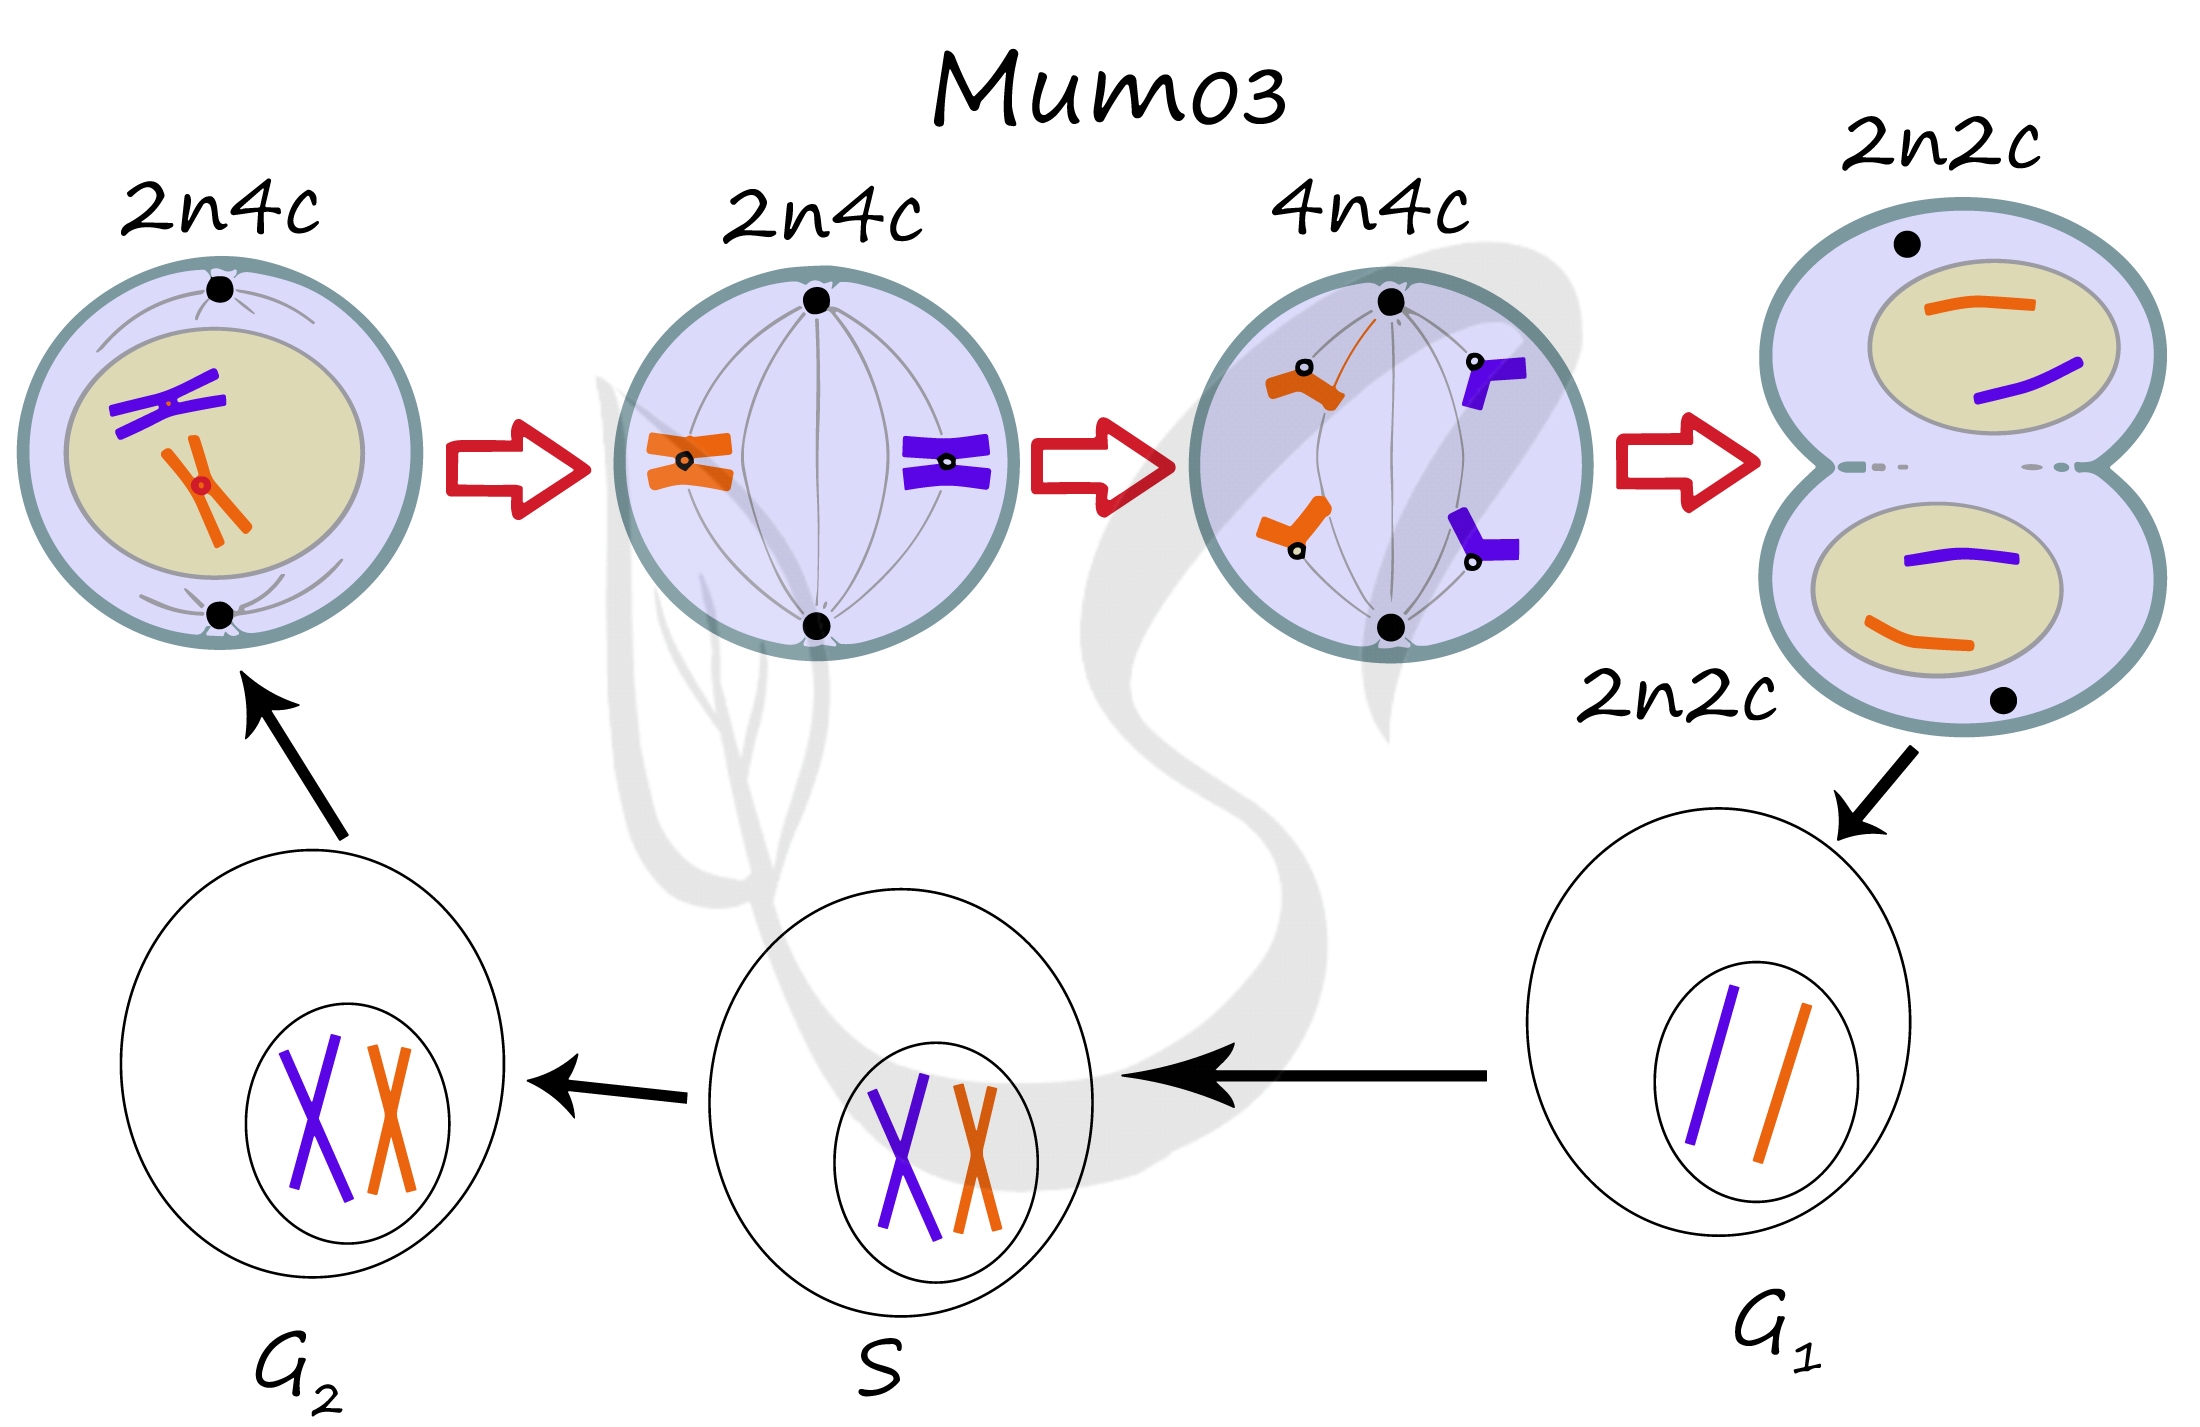 Сколько молекул днк в данной хромосоме. Схема митоза 2n. Схема мейоза для клетки с хромосомным набором 2n 6. Фазы митоза 2n2c. Митоз схема 2n2c.